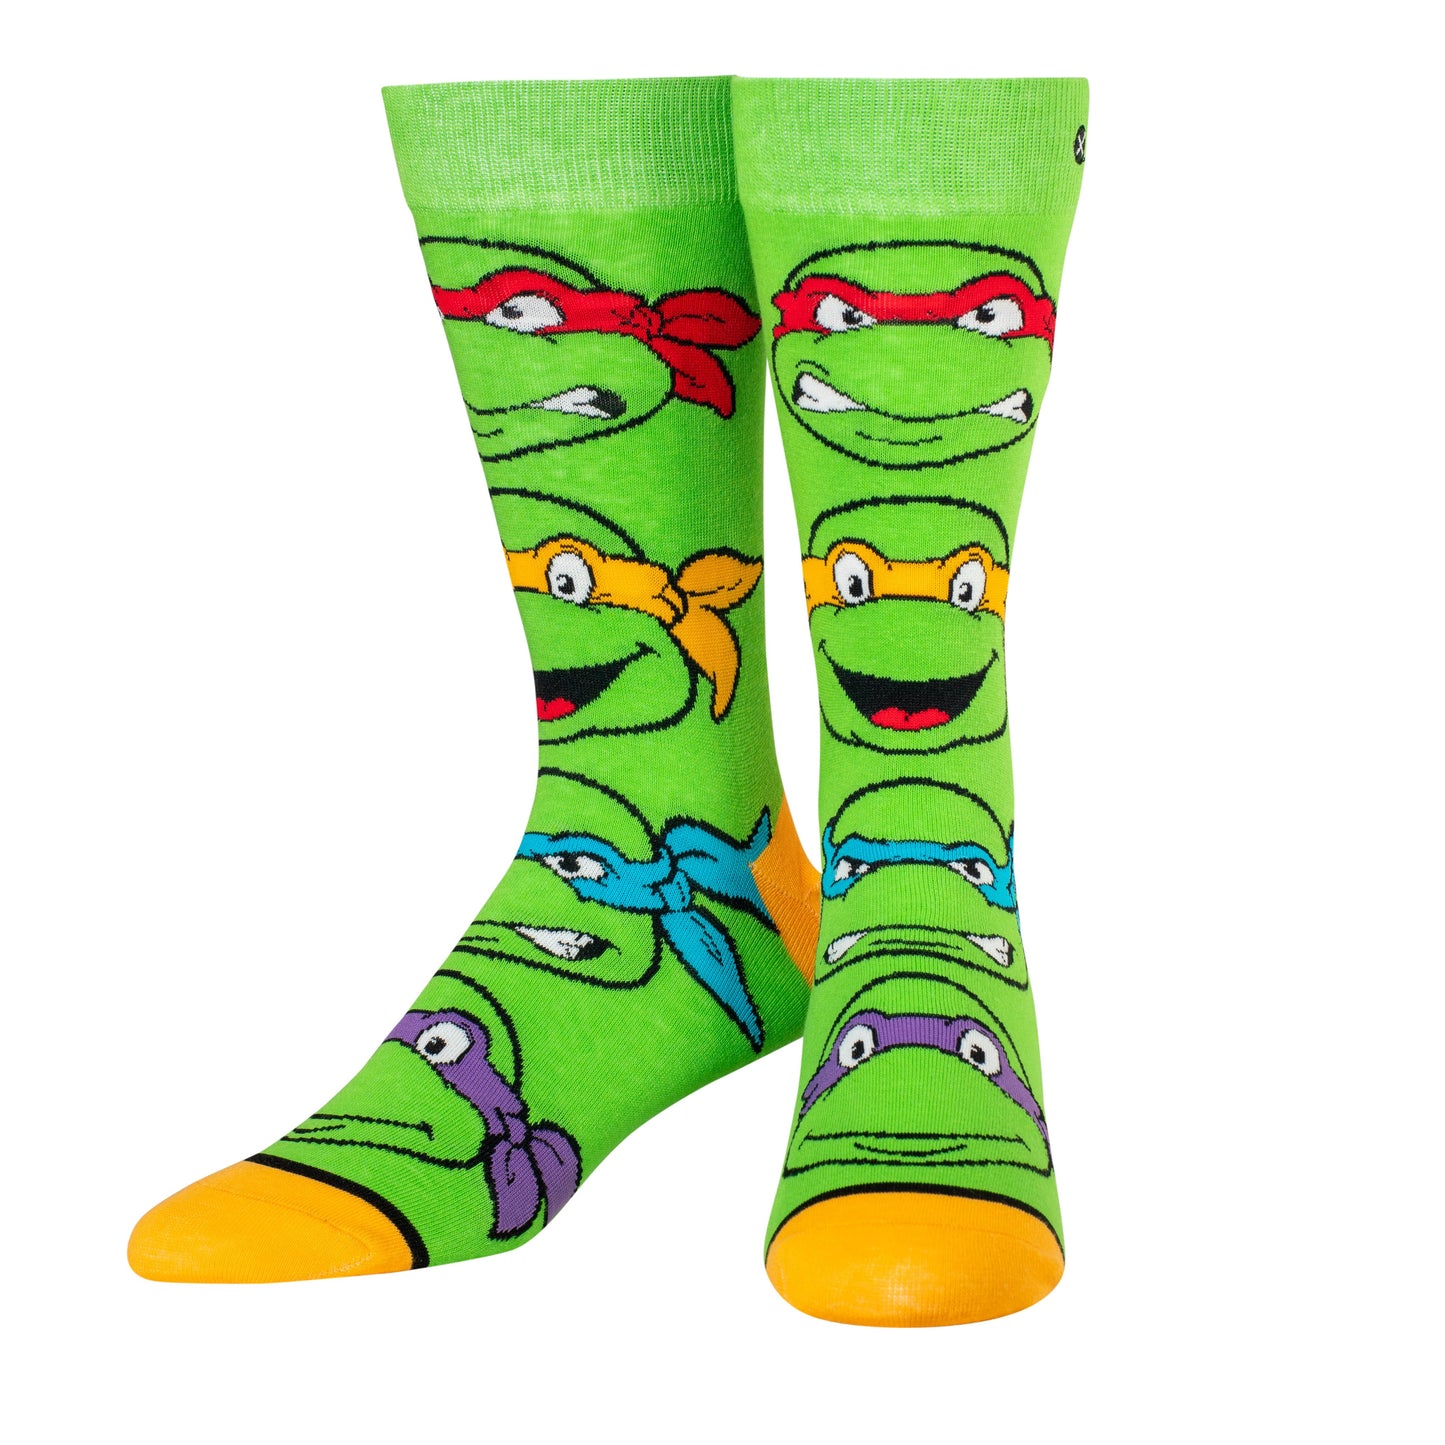 Teenage Mutant Ninja Turtles Men's Socks